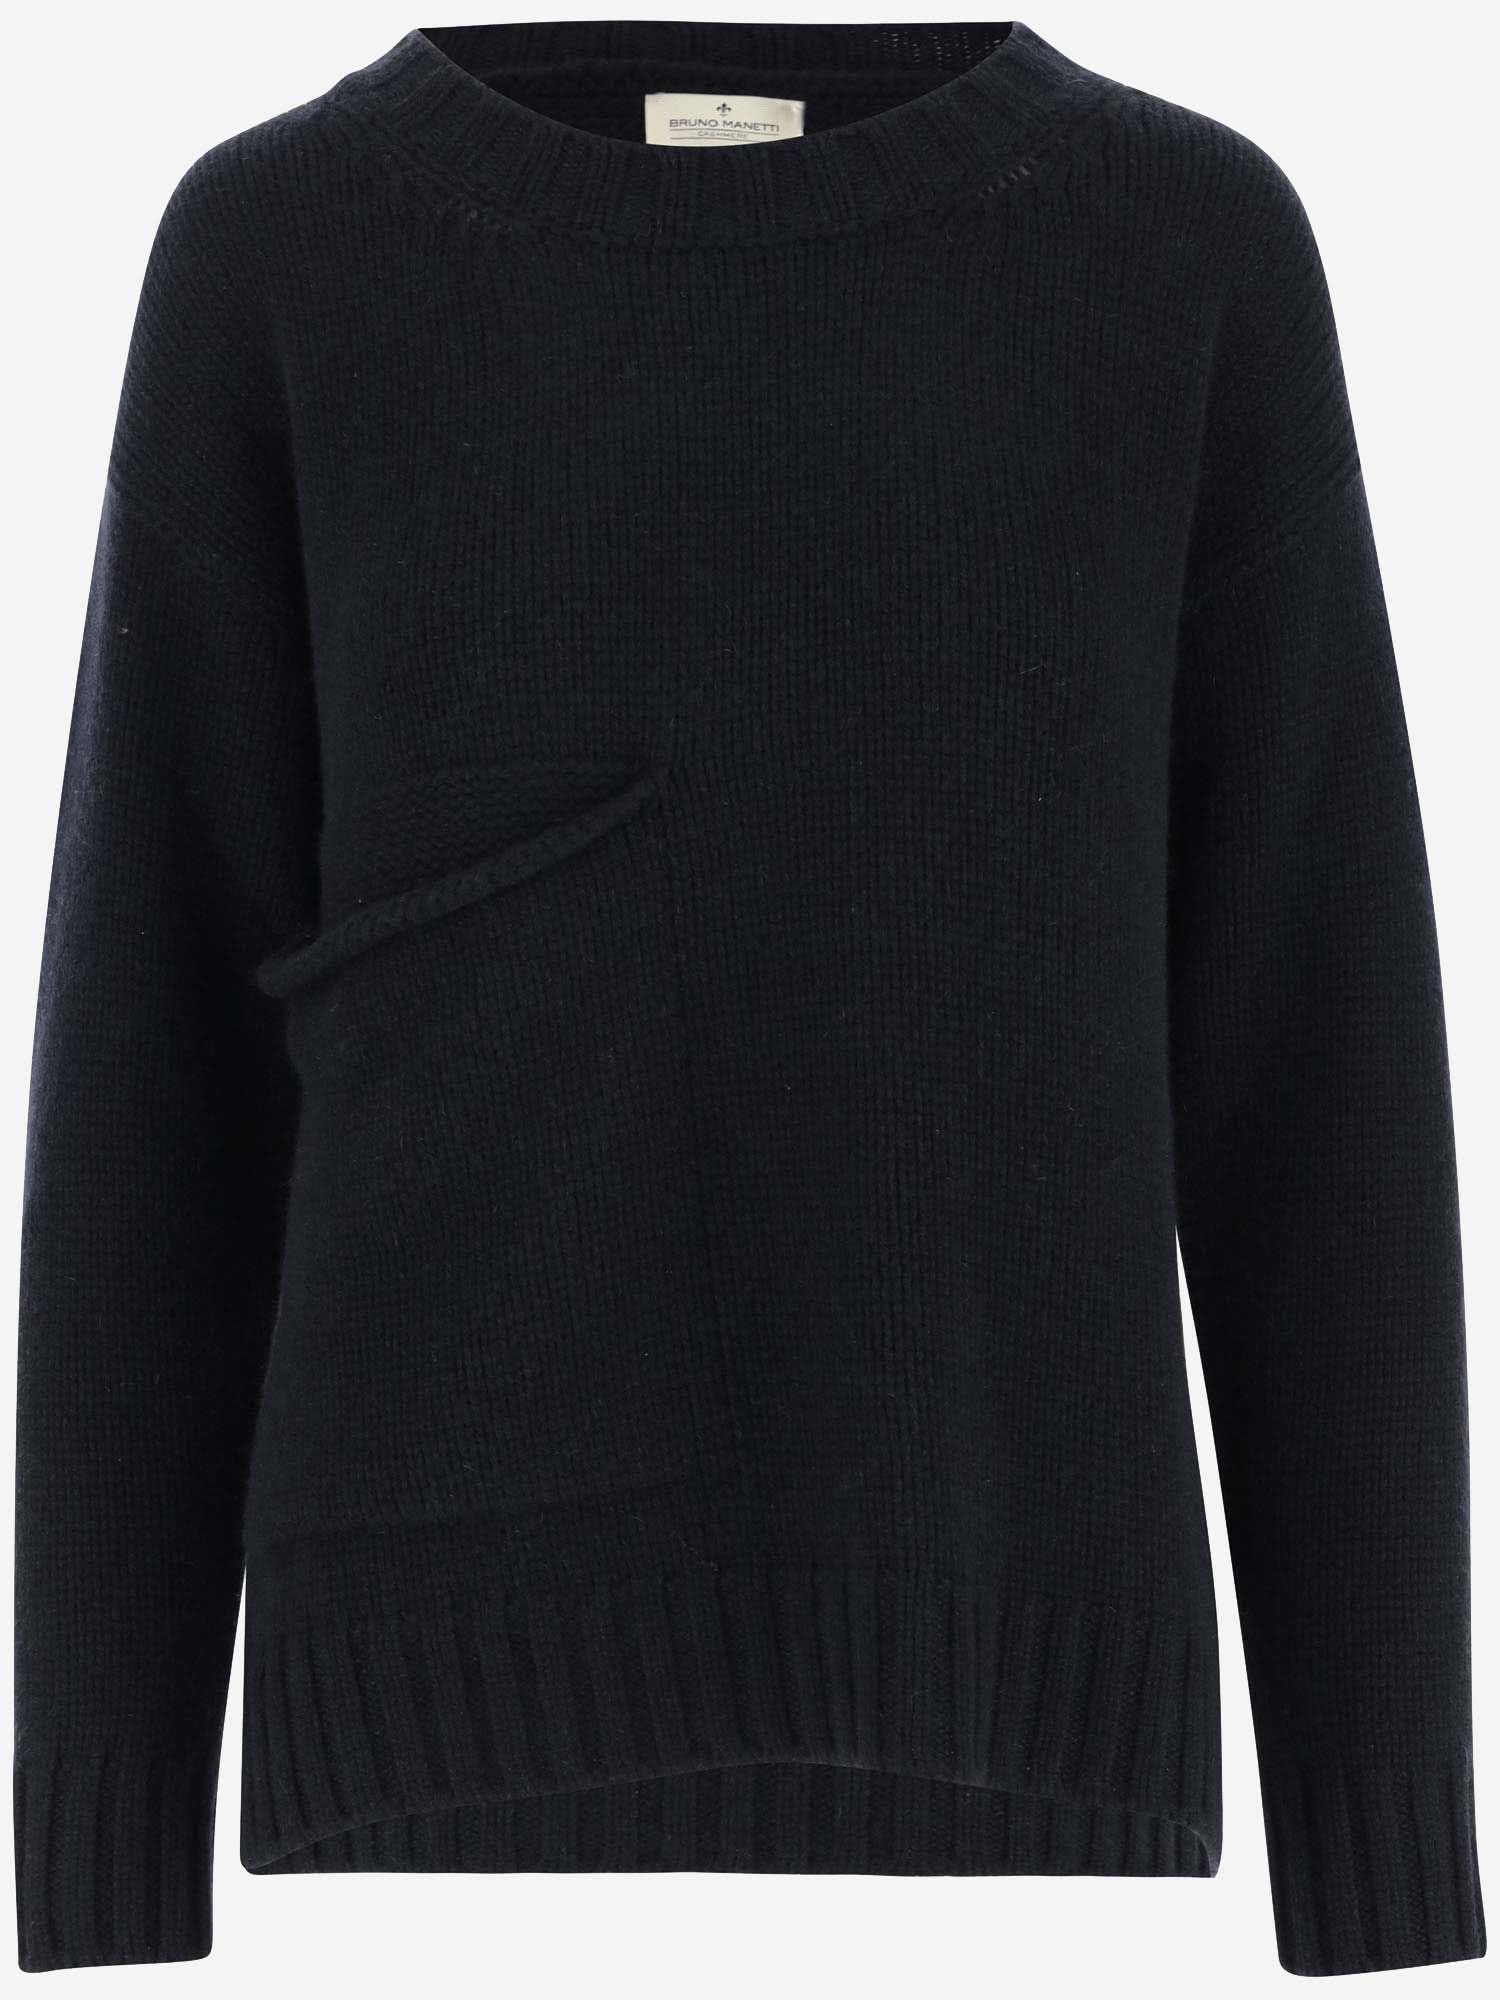 Bruno Manetti Cashmere Sweater In Black